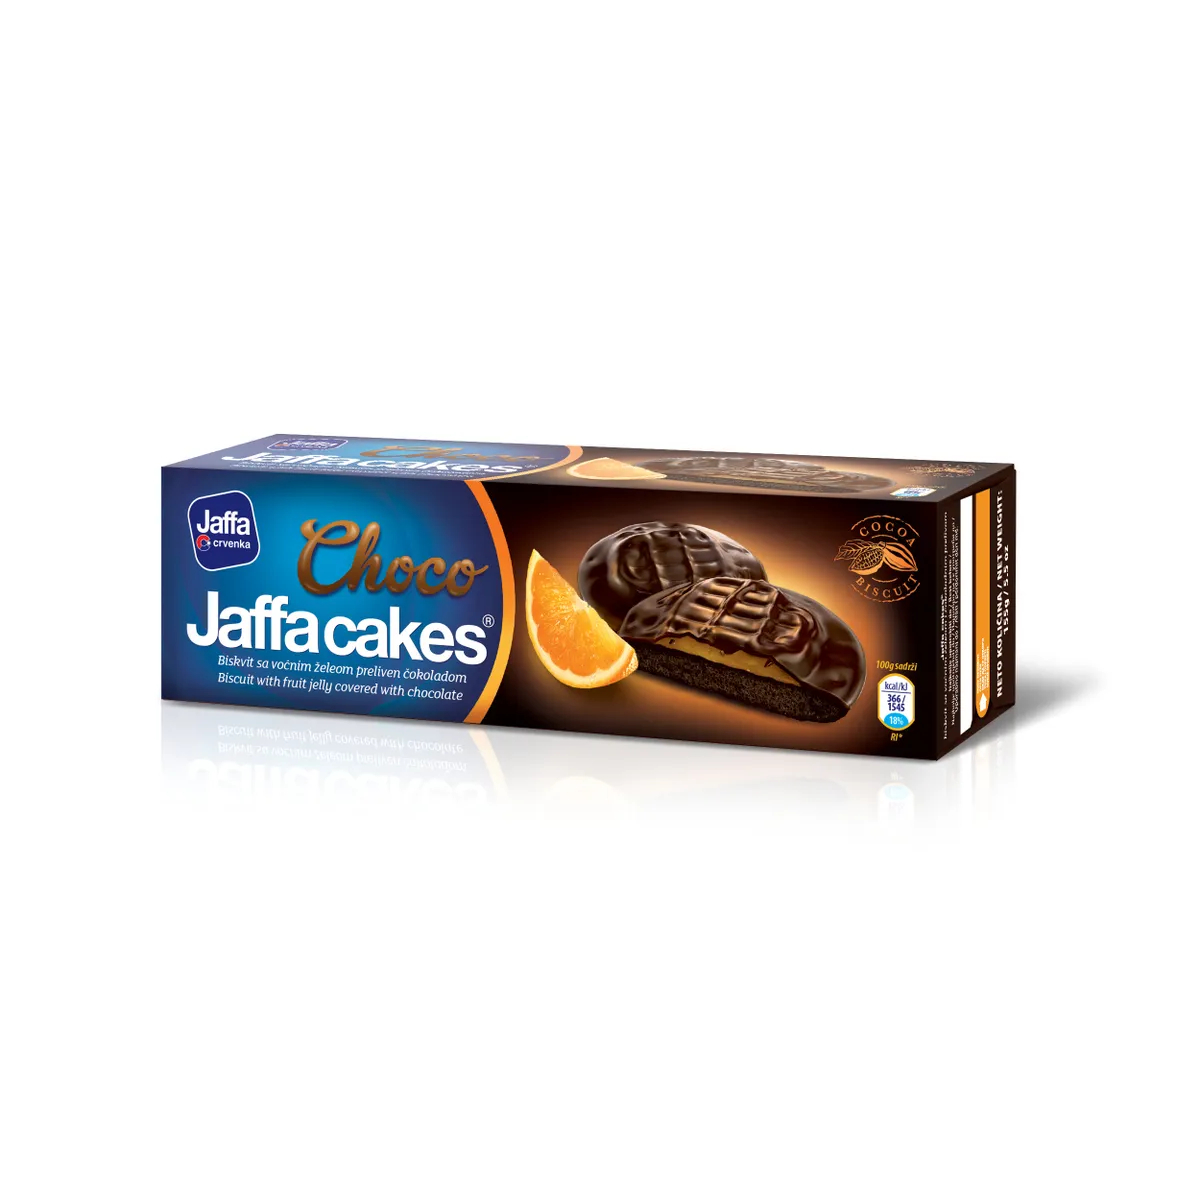 Печенье бисквитное Jaffa cakes Шоколад, 155 г печенье акконд трио какао шоколад 460 г